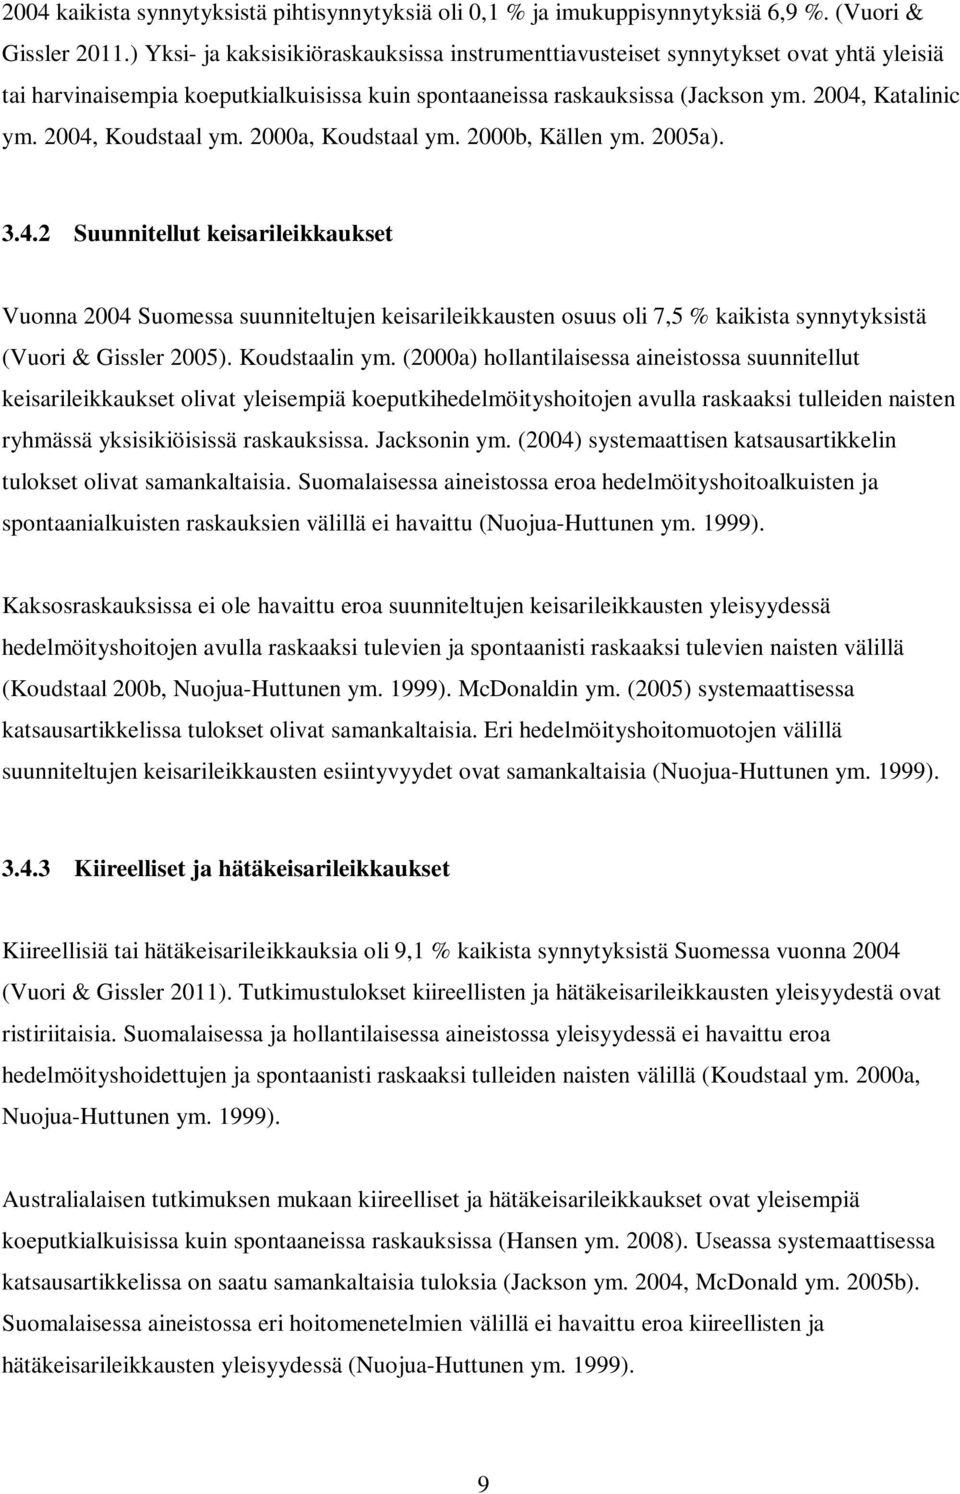 2004, Koudstaal ym. 2000a, Koudstaal ym. 2000b, Källen ym. 2005a). 3.4.2 Suunnitellut keisarileikkaukset Vuonna 2004 Suomessa suunniteltujen keisarileikkausten osuus oli 7,5 % kaikista synnytyksistä (Vuori & Gissler 2005).